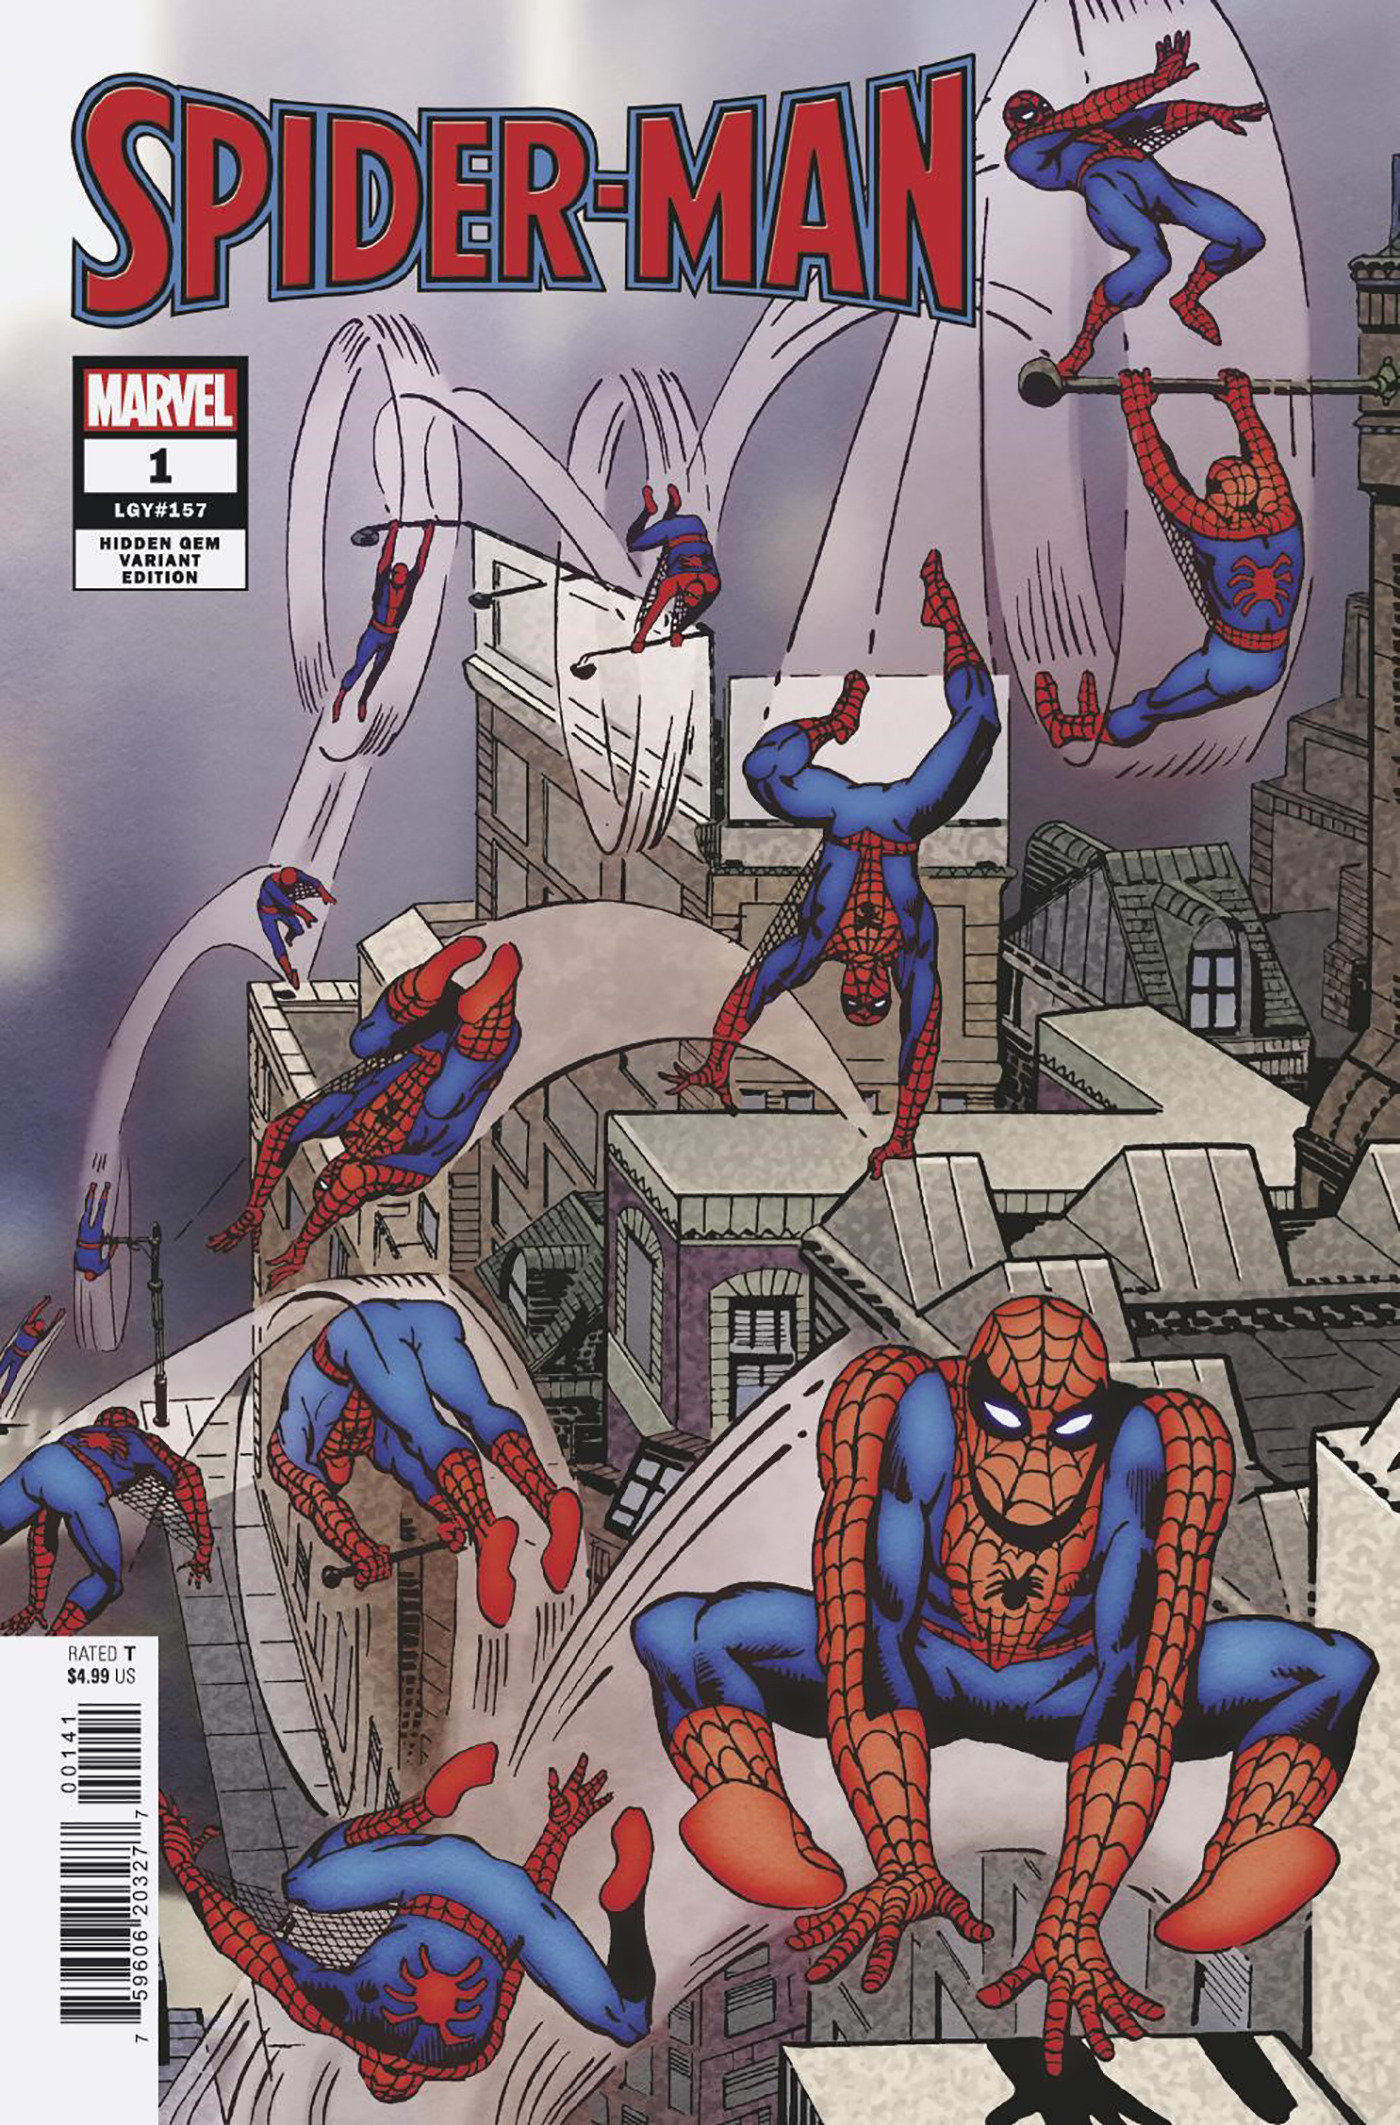 Spider-Man #1 1 for 100 Incentive Ditko Hidden Gem Variant